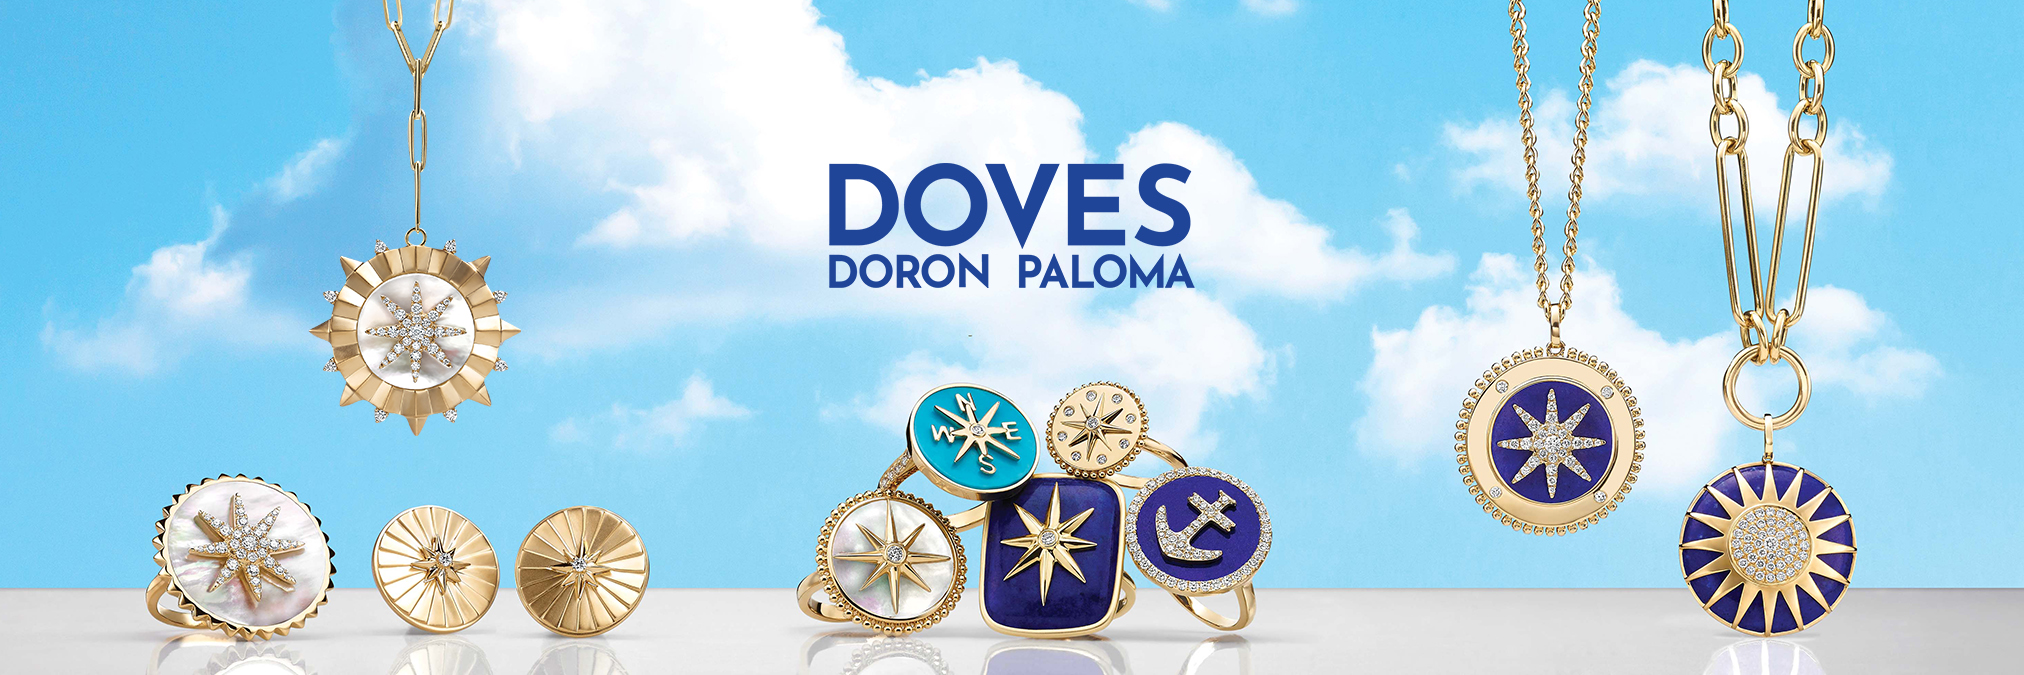 Doves by Doron Paloma